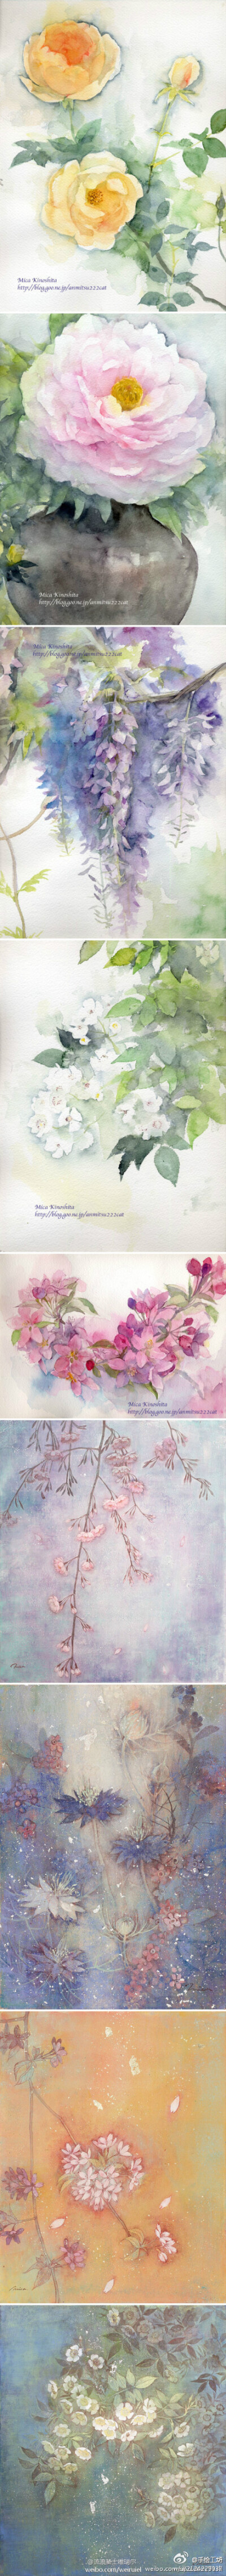 日本水彩画家木下美香，喜欢猫咪和养花。她的花卉日志中除了唯美的水彩作品，还有附有花卉的介绍和花语。